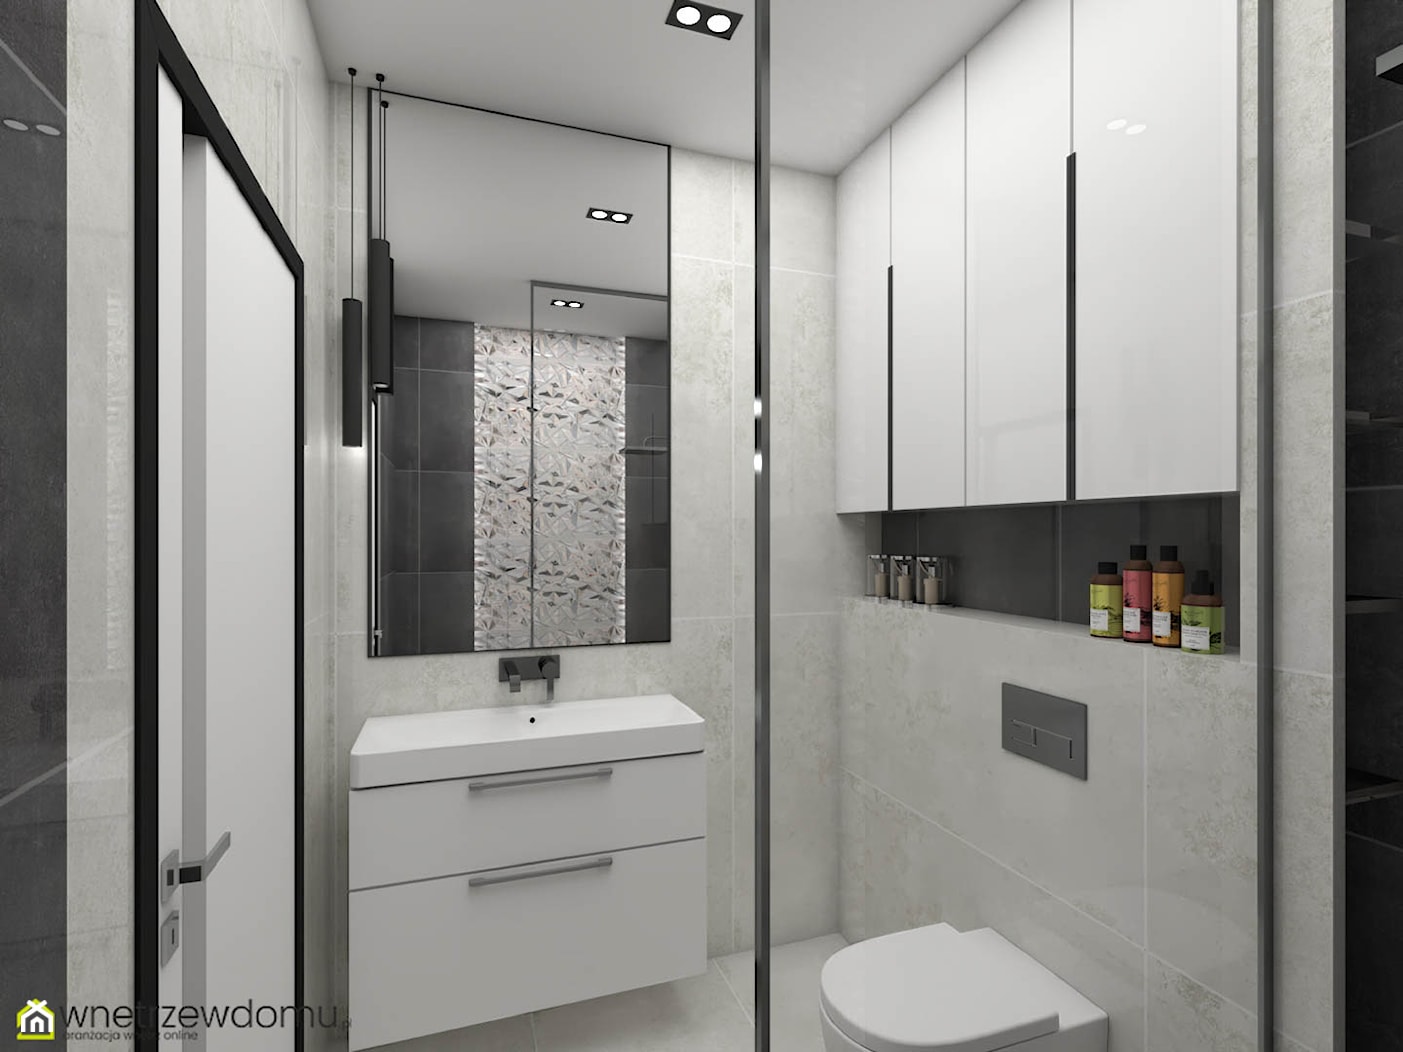 Niewielka łazienka z kabiną prysznicową - zdjęcie od wnetrzewdomu - Homebook